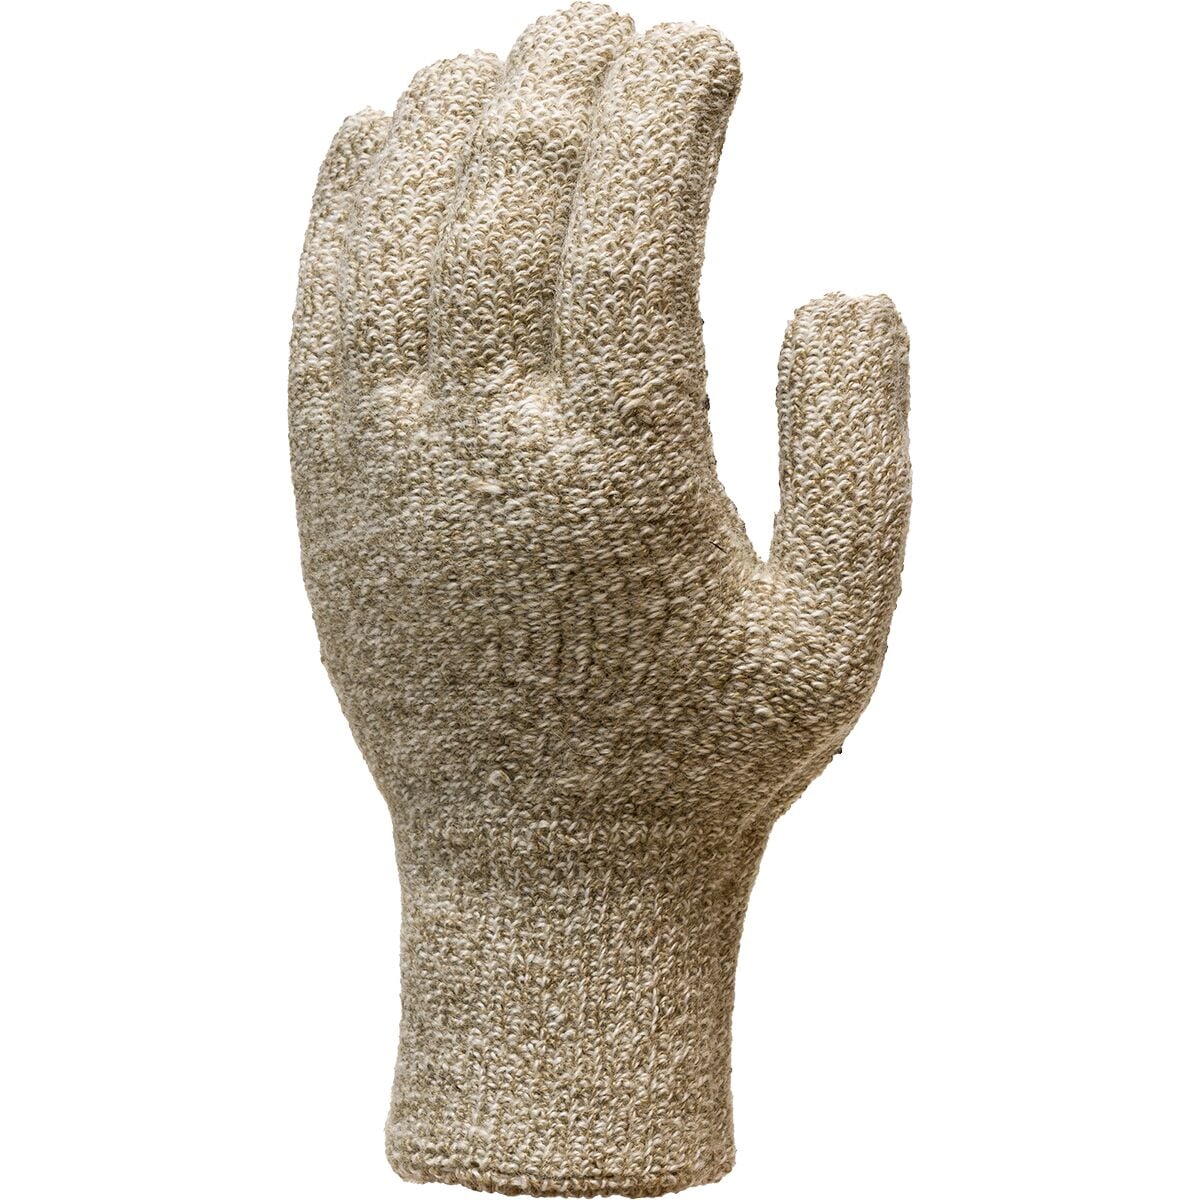 Kinco Alyeska Rag Wool Lined Knit Shell Full-Finger Glove